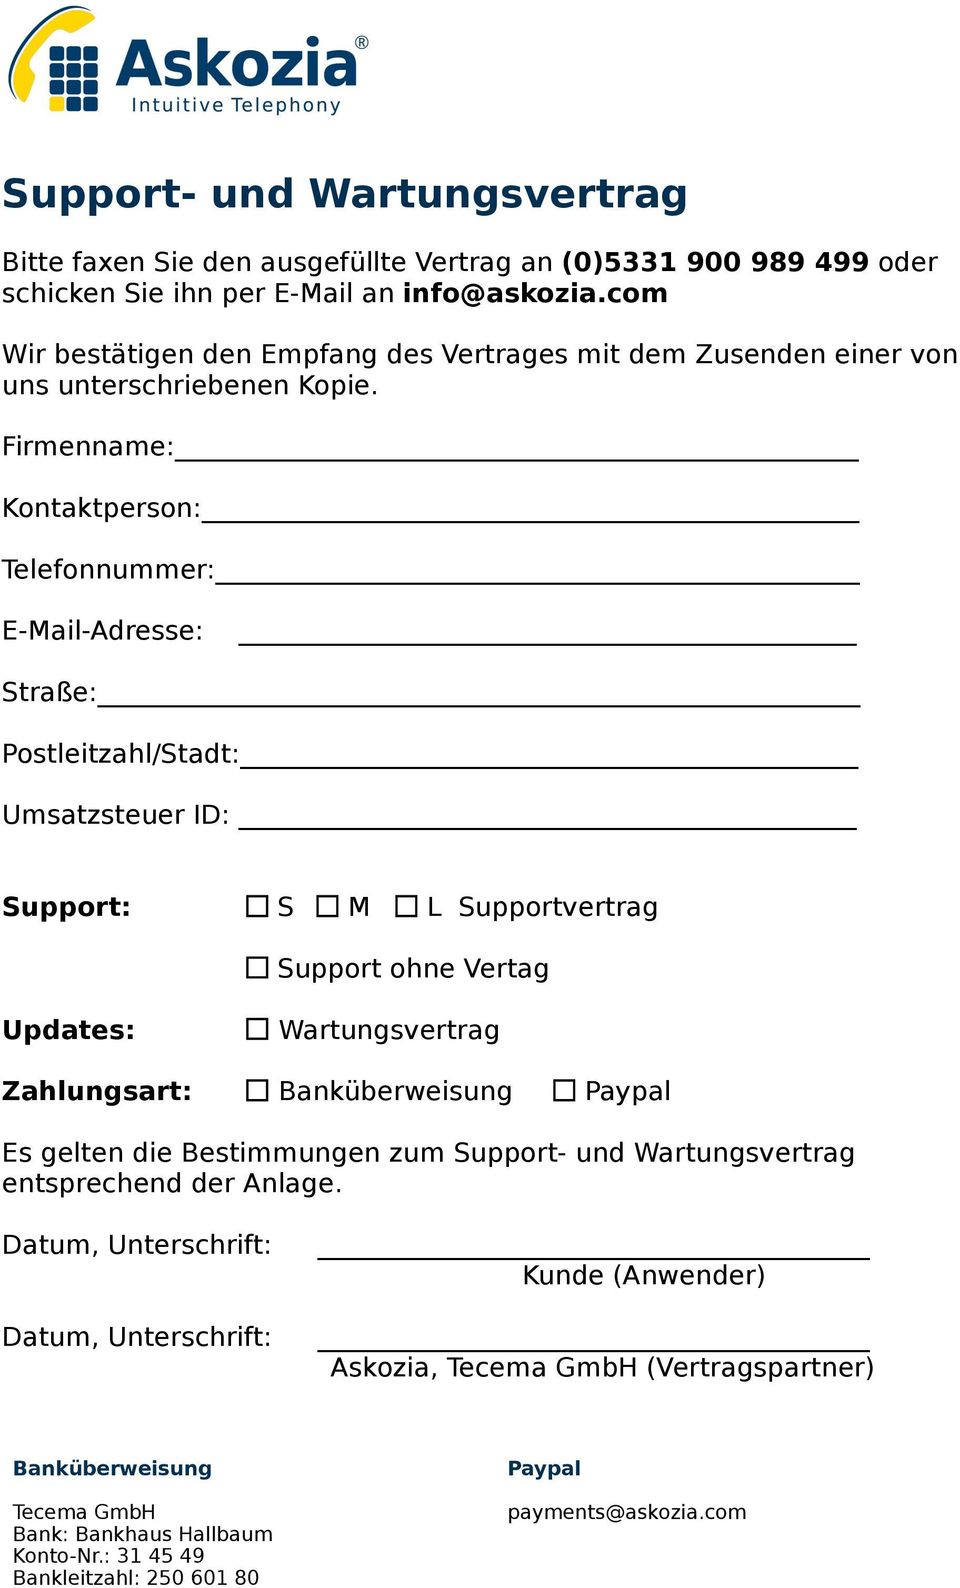 Firmenname: Kontaktperson: Telefonnummer: E-Mail-Adresse:" Straße: Postleitzahl/Stadt: Umsatzsteuer ID:" Support:!! S" M" L Supportvertrag" " " " " " Support ohne Vertag Updates:!